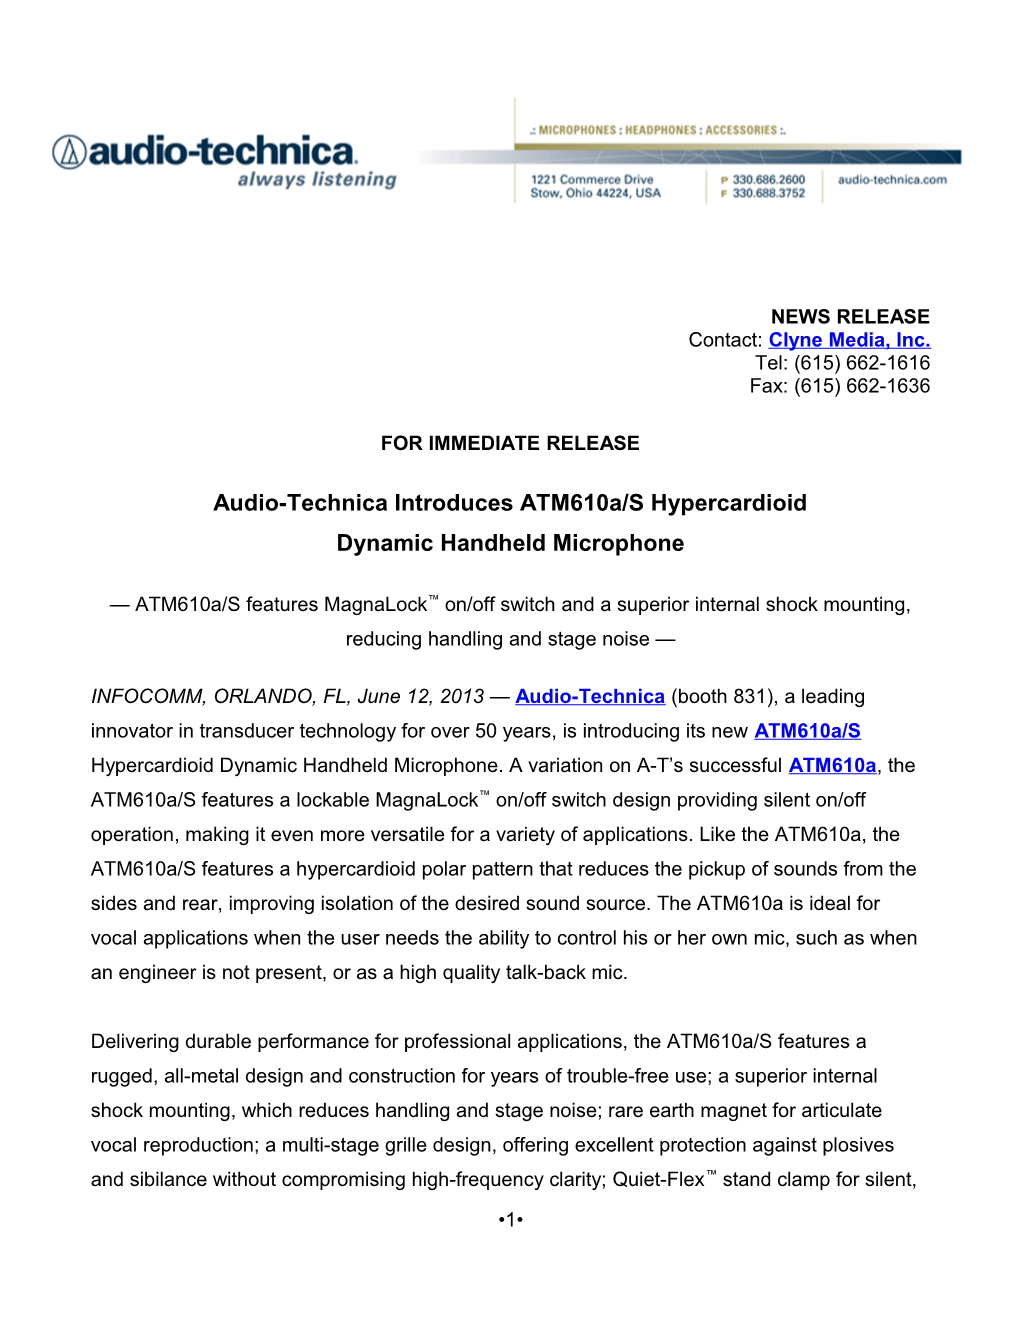 Audio-Technica Introduces Atm610a/S Hypercardioid